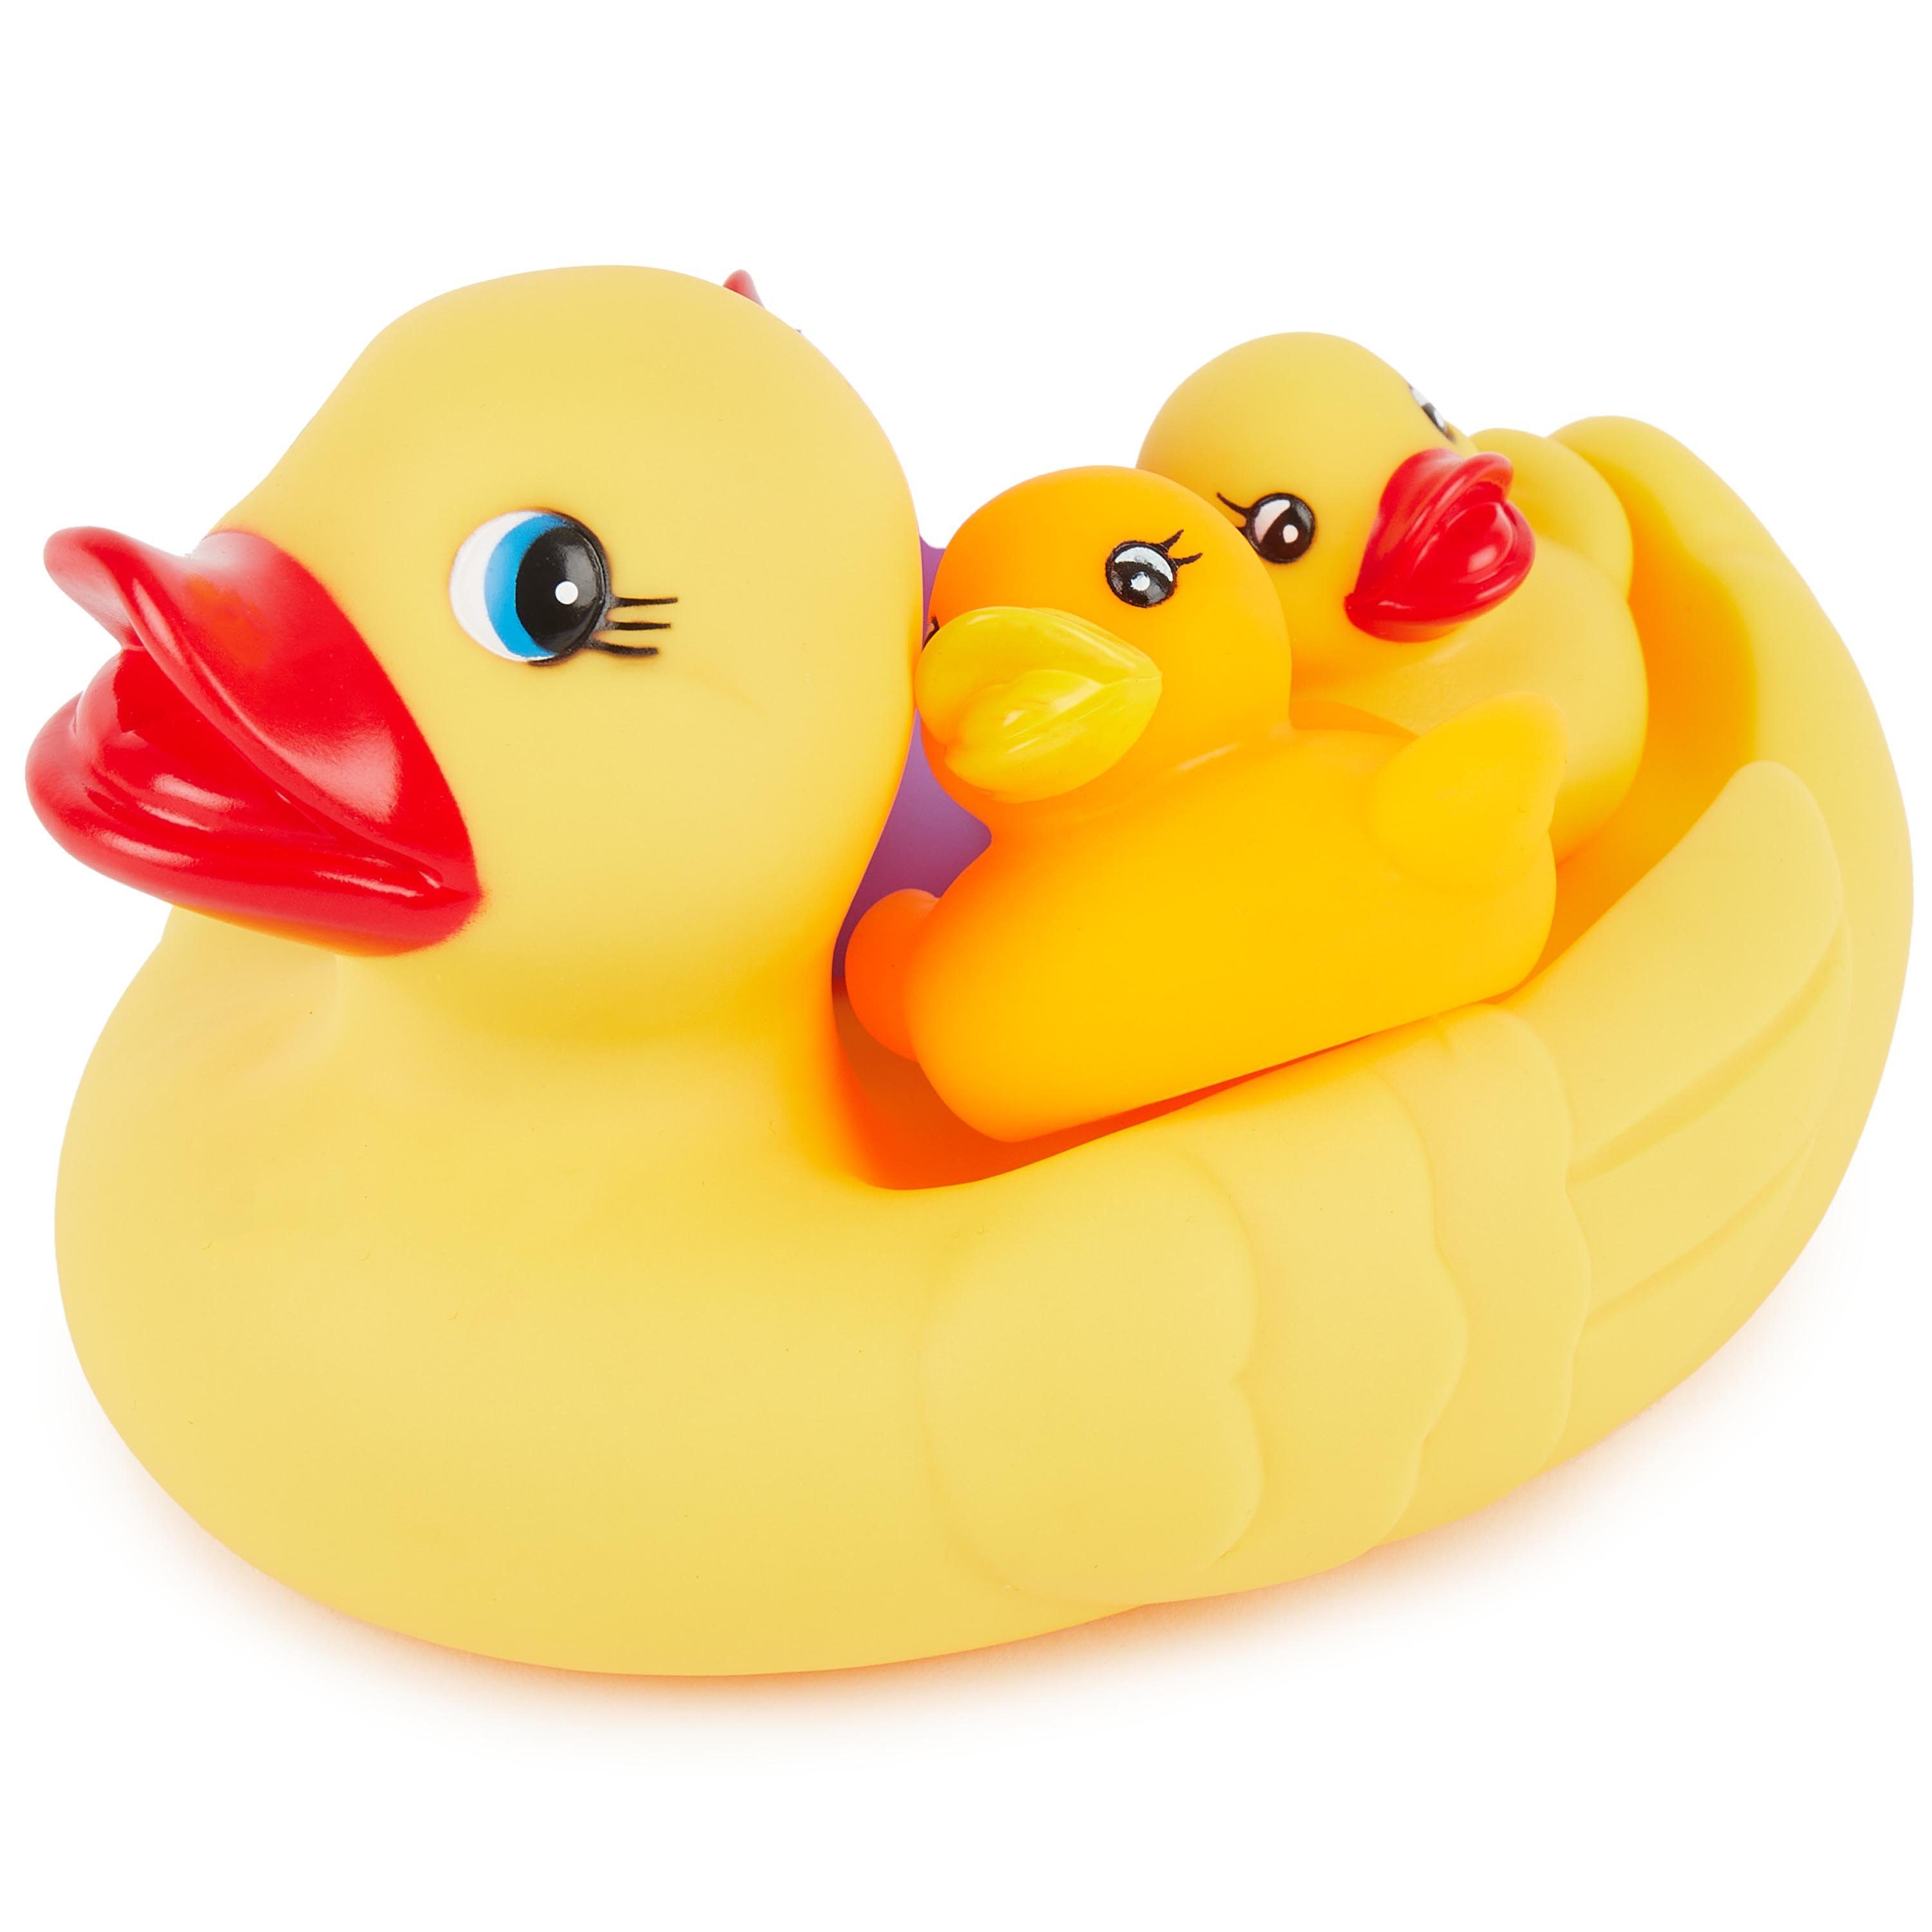 Spielzeug Badewannenspielzeug BIECO Badespielzeug Bieco Schwimmenten-Familie 4 Stück Badeenten Set Quitsche Ente Badeente Baby B